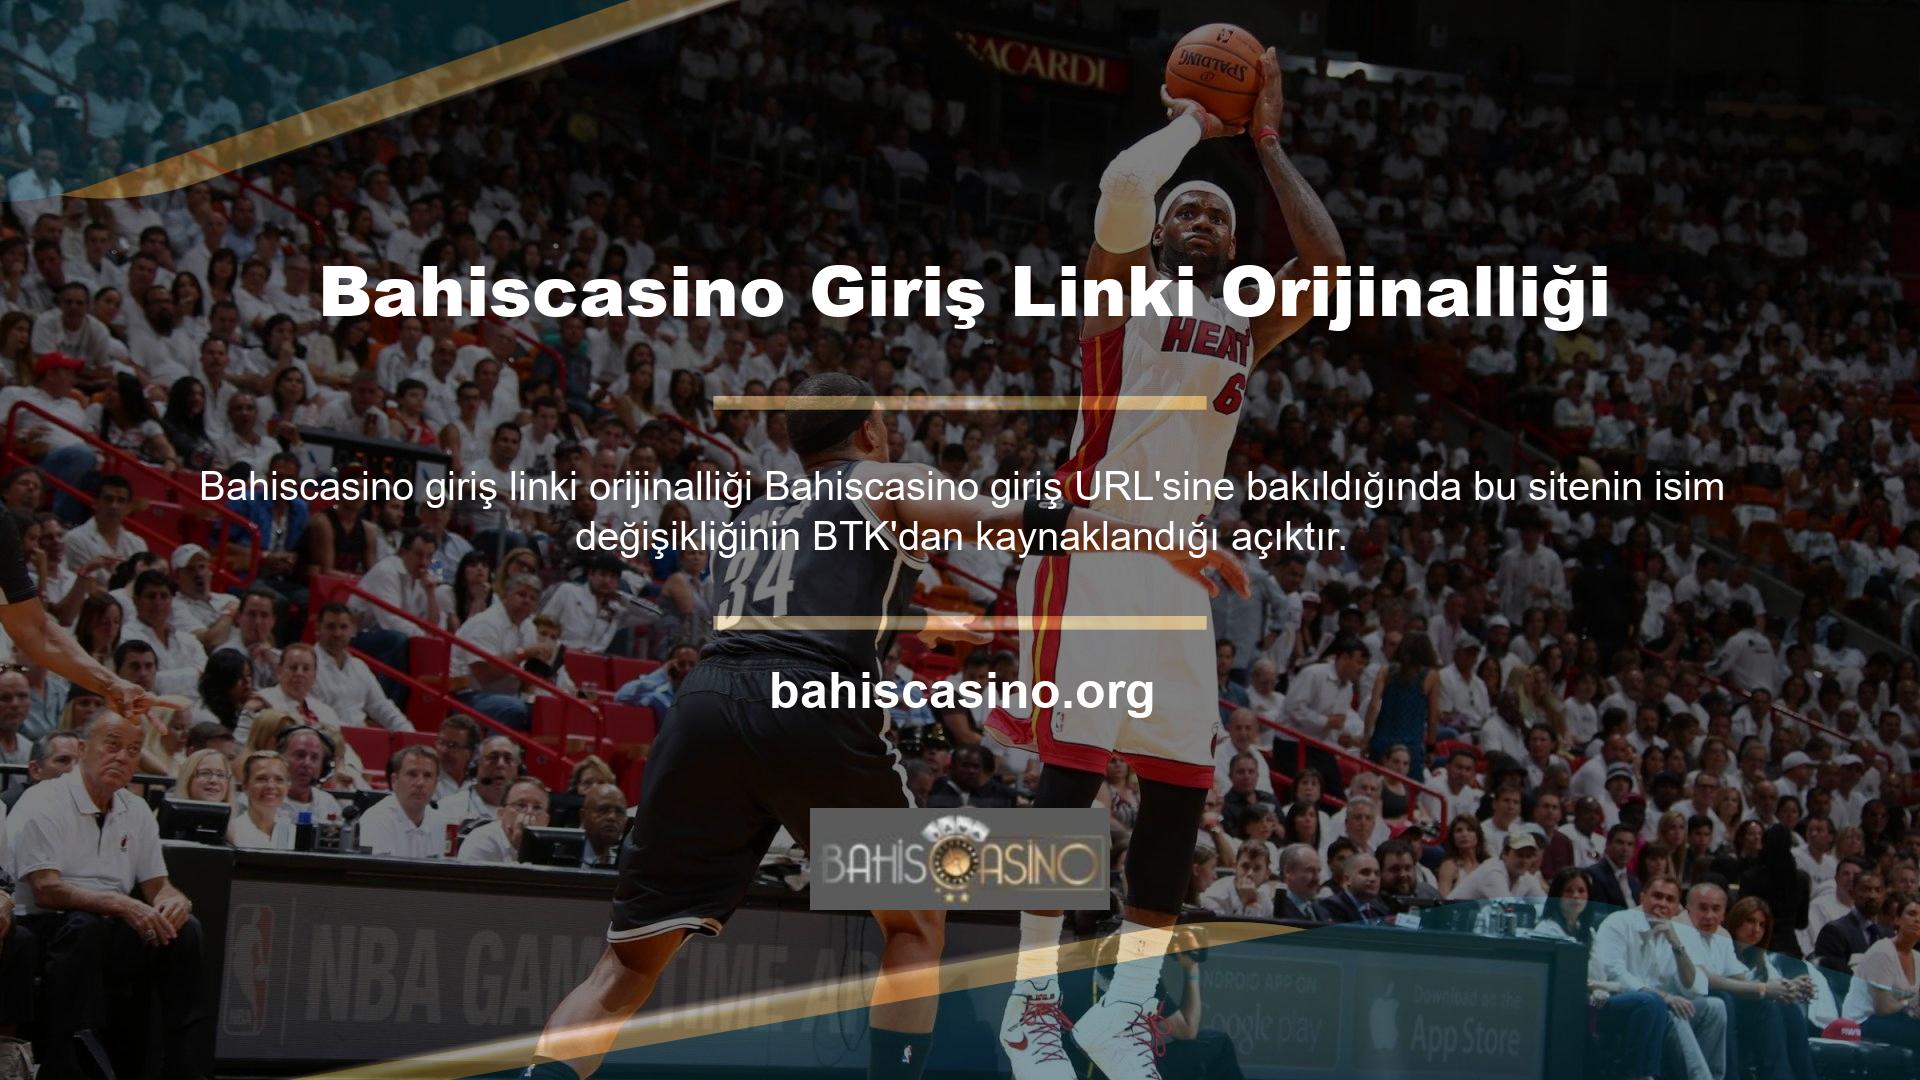 Btk adlarının engellenmiş olması, Bahiscasino oturum açma URL'sinin orijinalliğini bilmeniz gerektiğini de gösterir